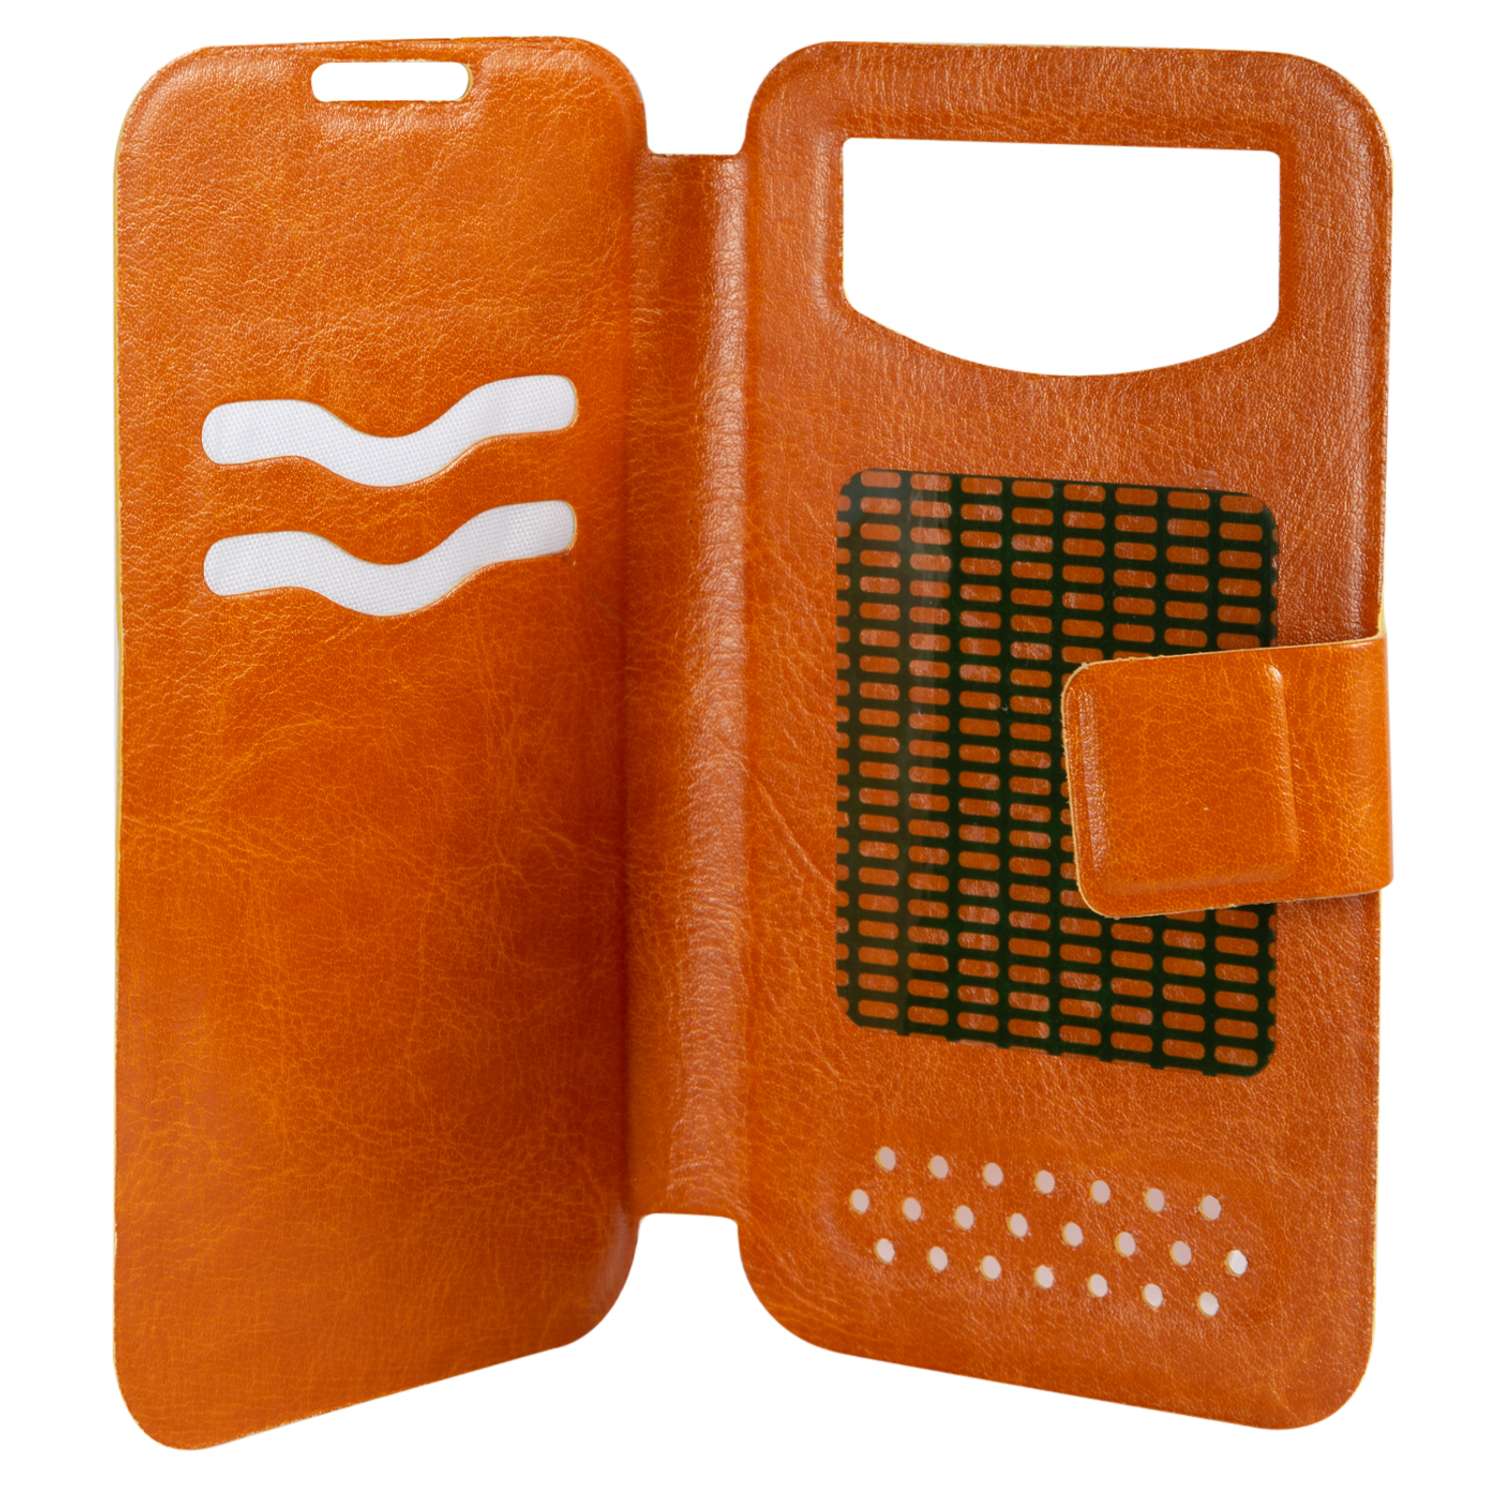 Чехол универсальный iBox Universal для телефонов 4.2-5 дюйма оранжевый - фото 2